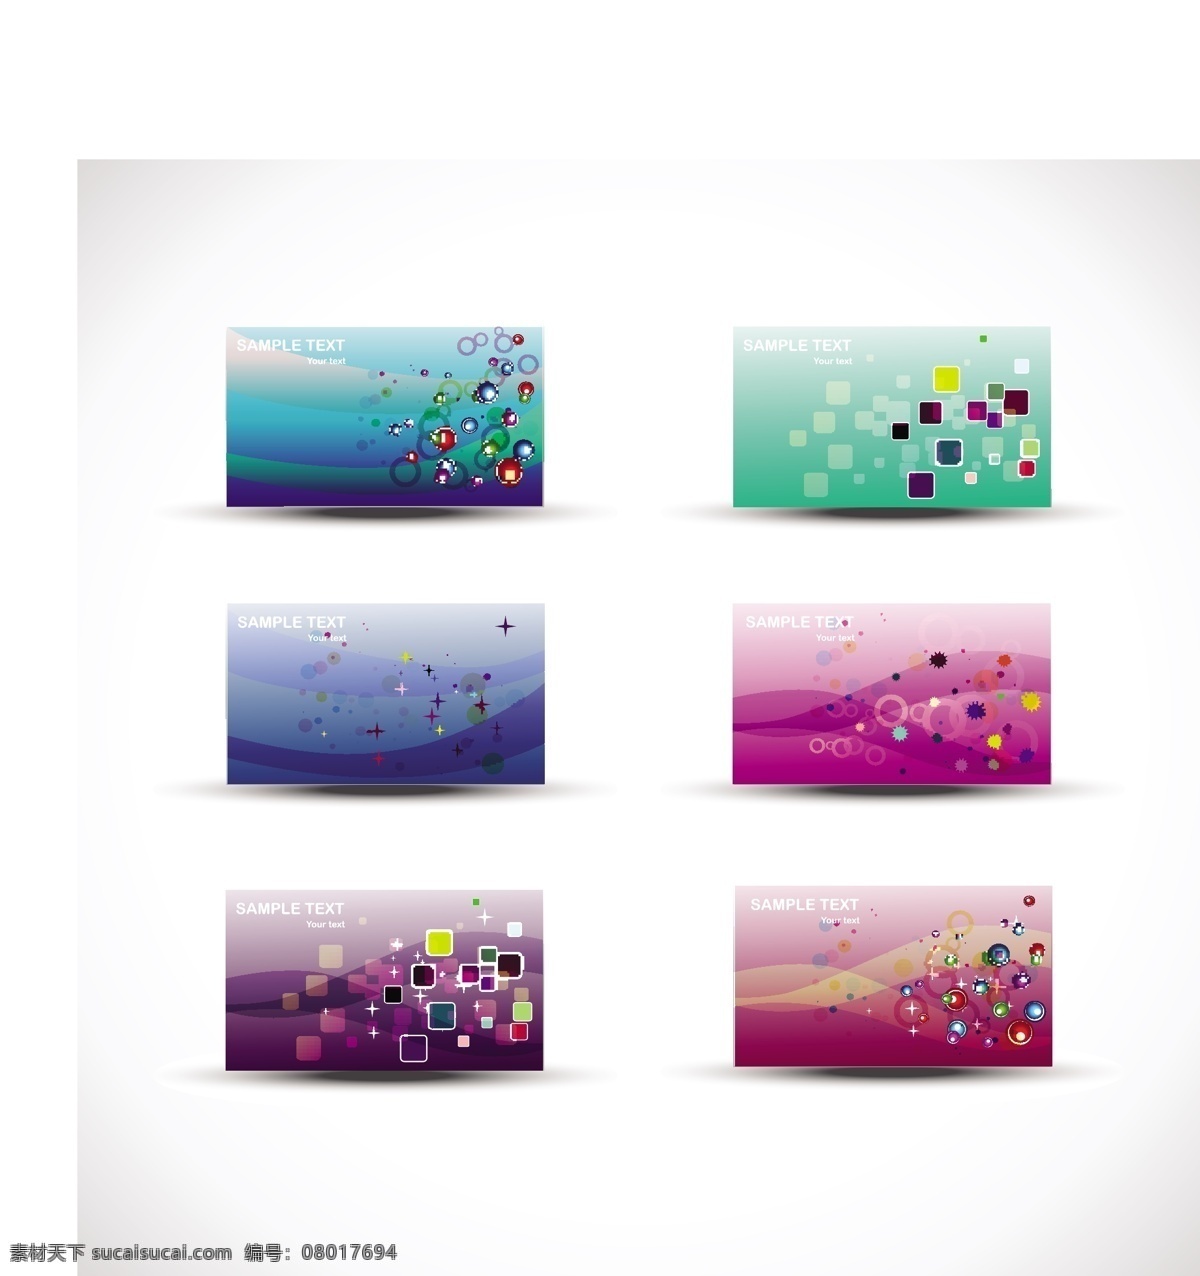 彩色 现代 名片 集 商业 抽象 卡片 模板 纸张 波浪 全球 营销 艺术 色彩 形状 企业 公司 符号 马赛克 品牌 名字 装饰